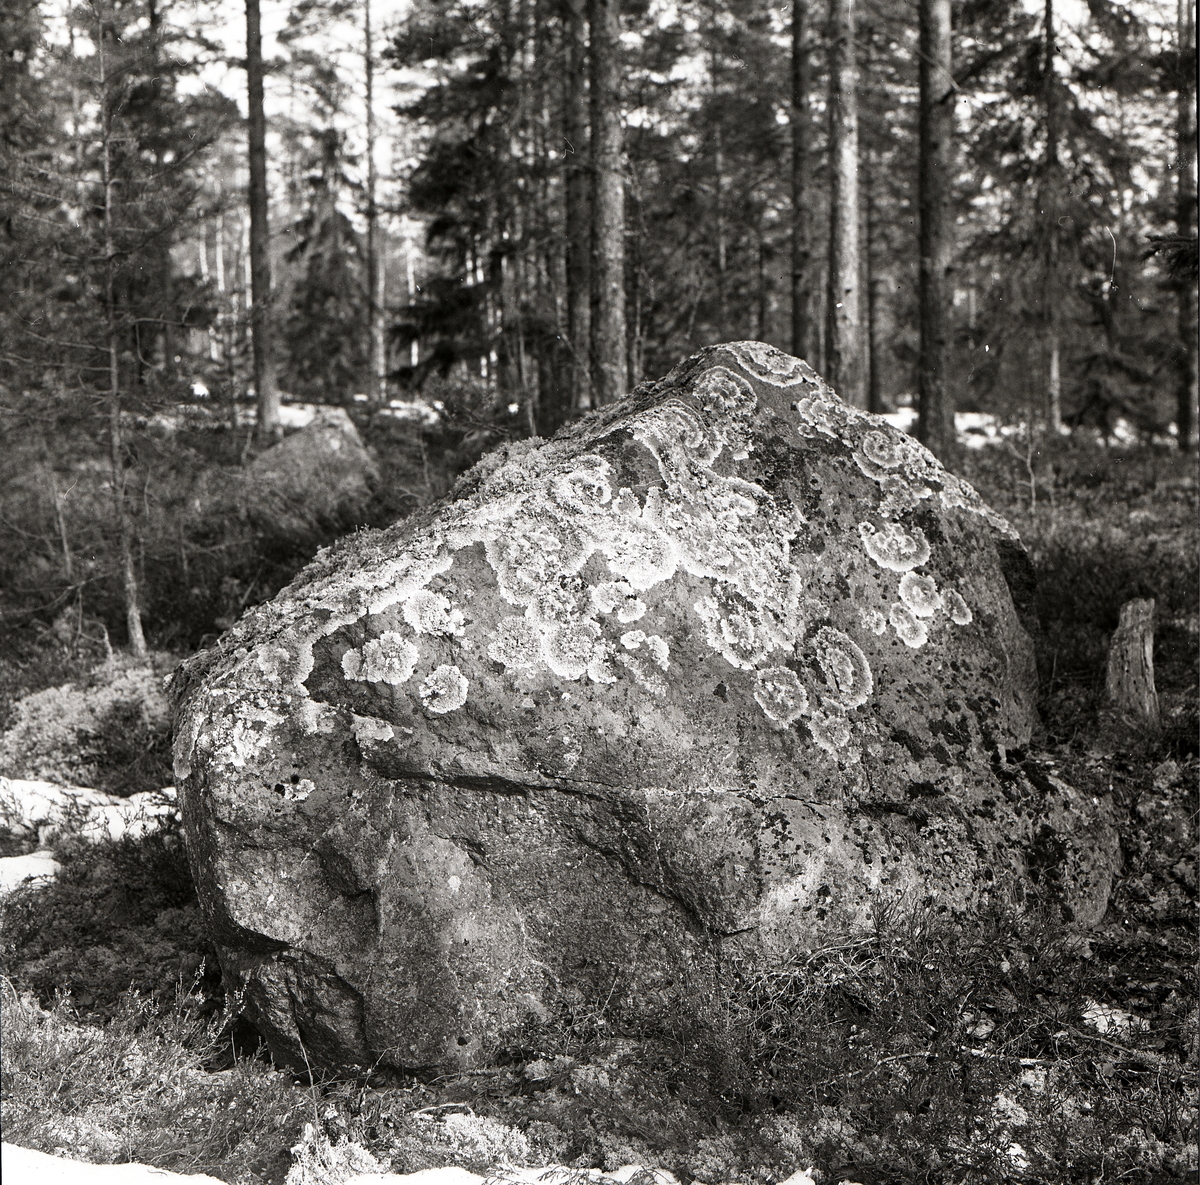 En sten täckt av rundformiga skorplavar i skogen vid Häggtjärn, april 1976.